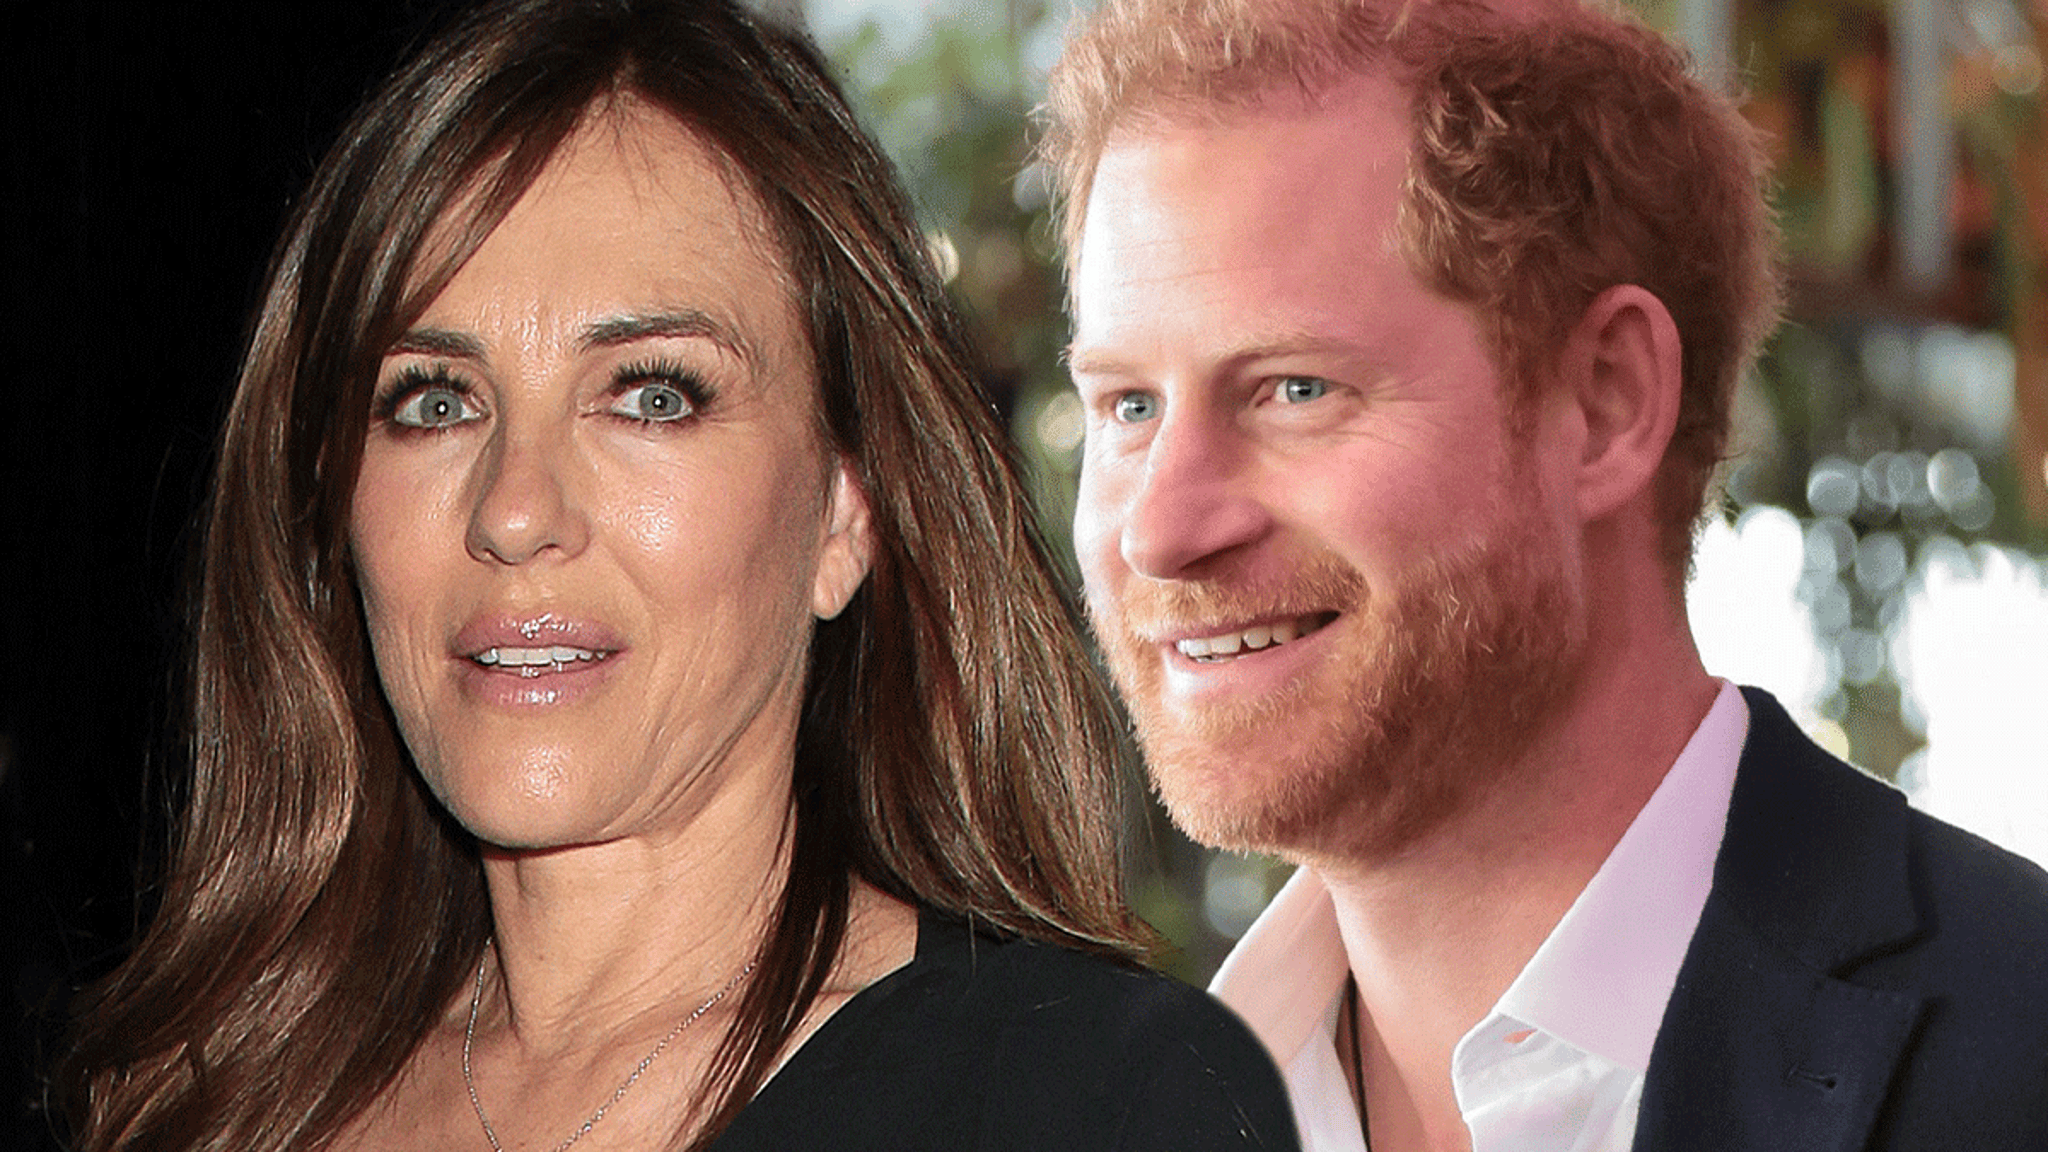 Elizabeth Hurley Denies Taking Prince Harry’s Virginity Amid Memoir Rumor